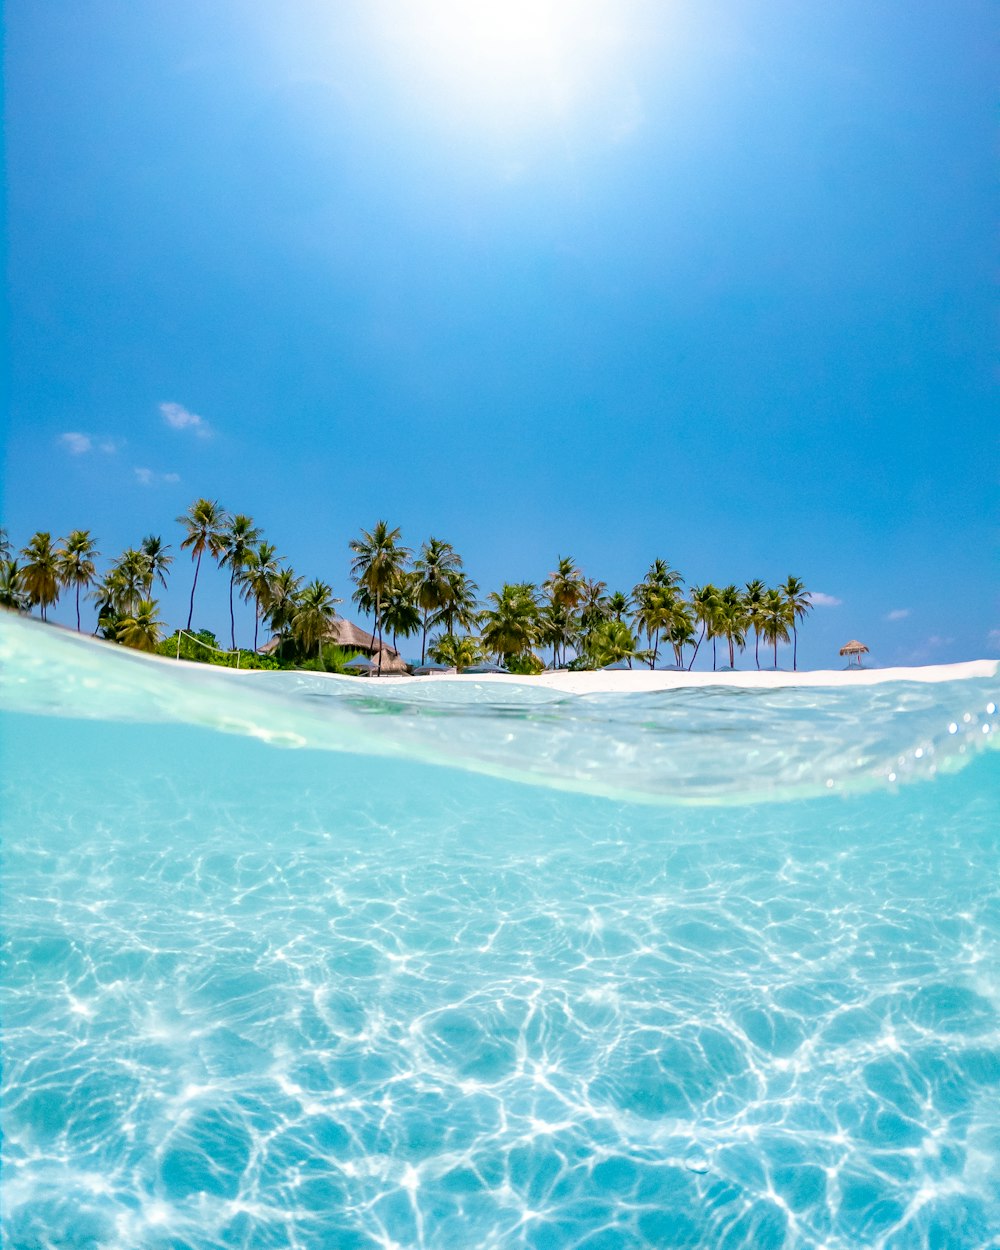 acqua cristallina vicino alle palme da cocco sotto il sole